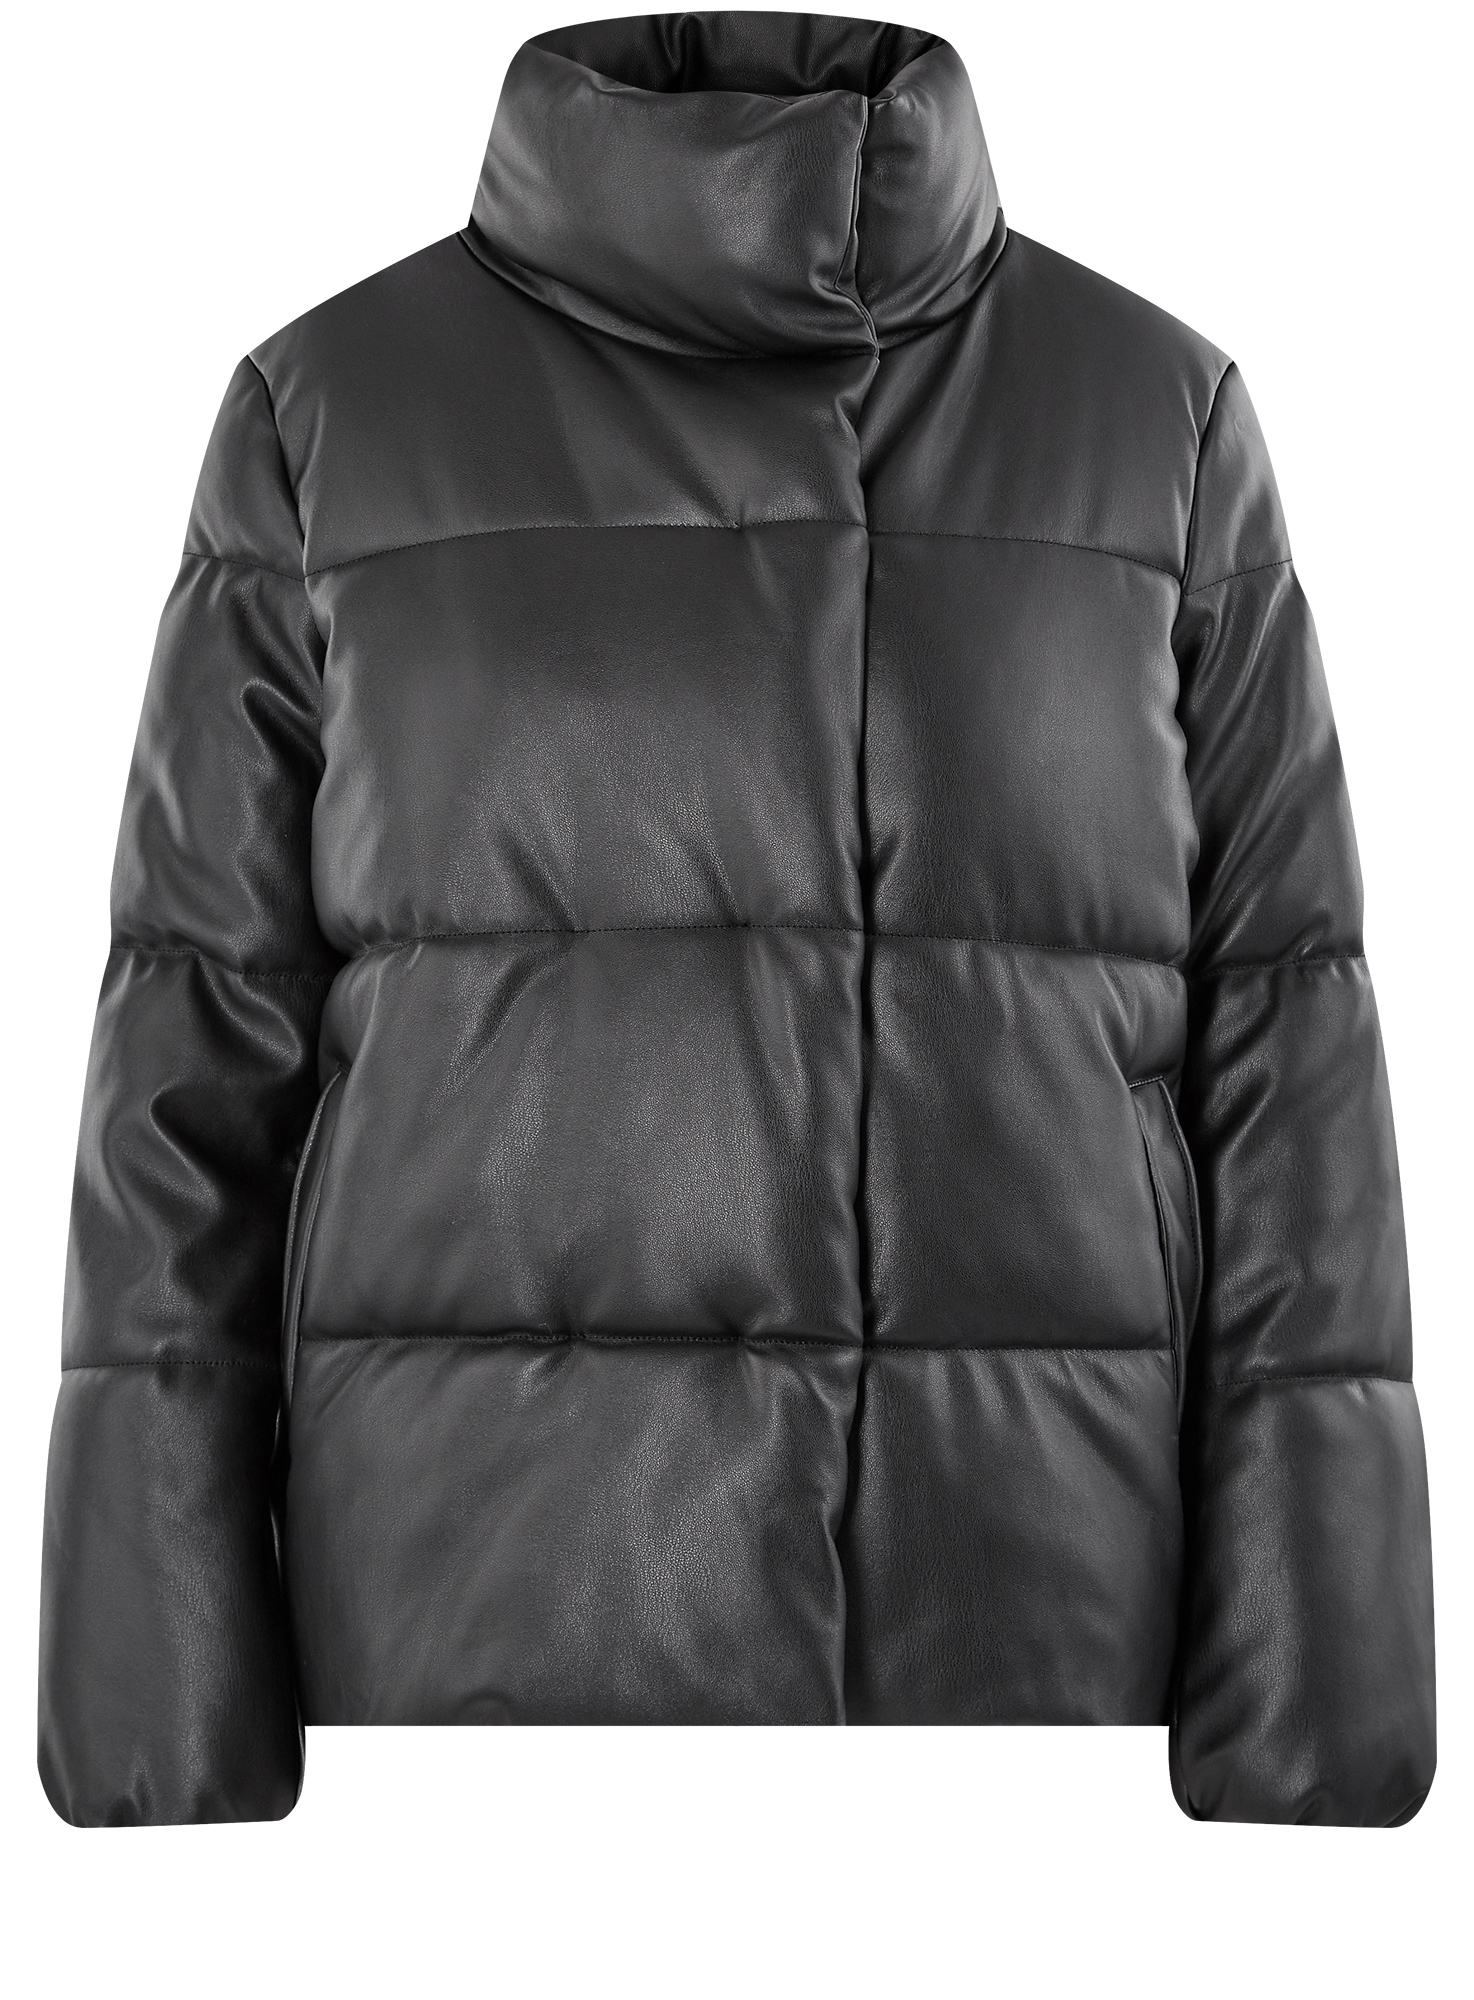 Кожаная куртка женская oodji 18A03012 черная 38 EU